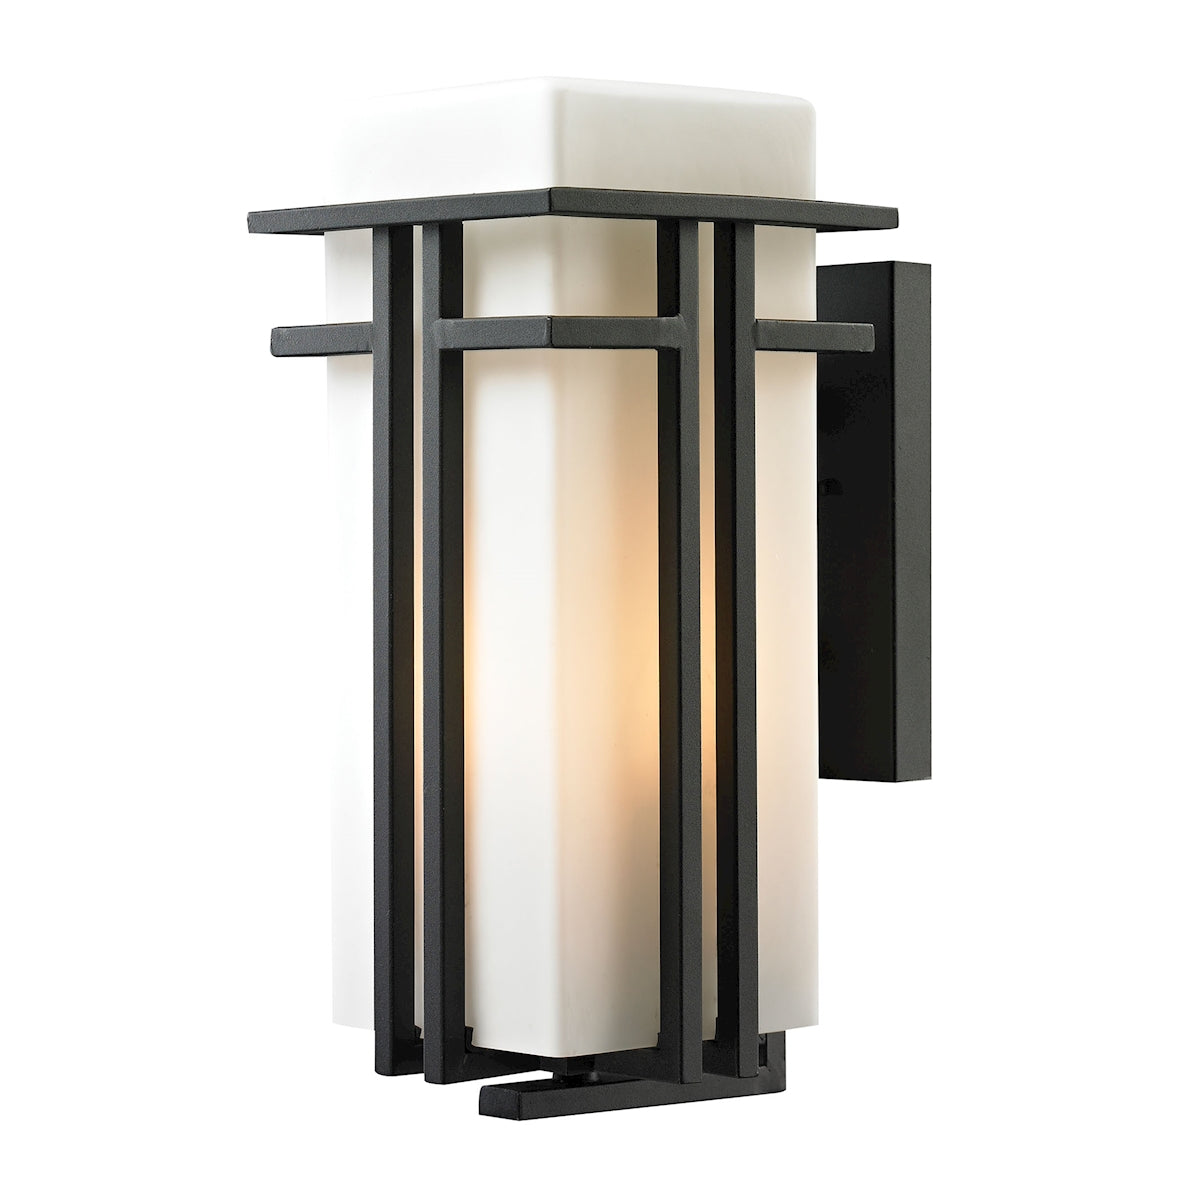 ELK Lighting 45087/1 - Croftwell 8" Wide 1-Light Outdoor Wall Lamp in Textured Matte Black